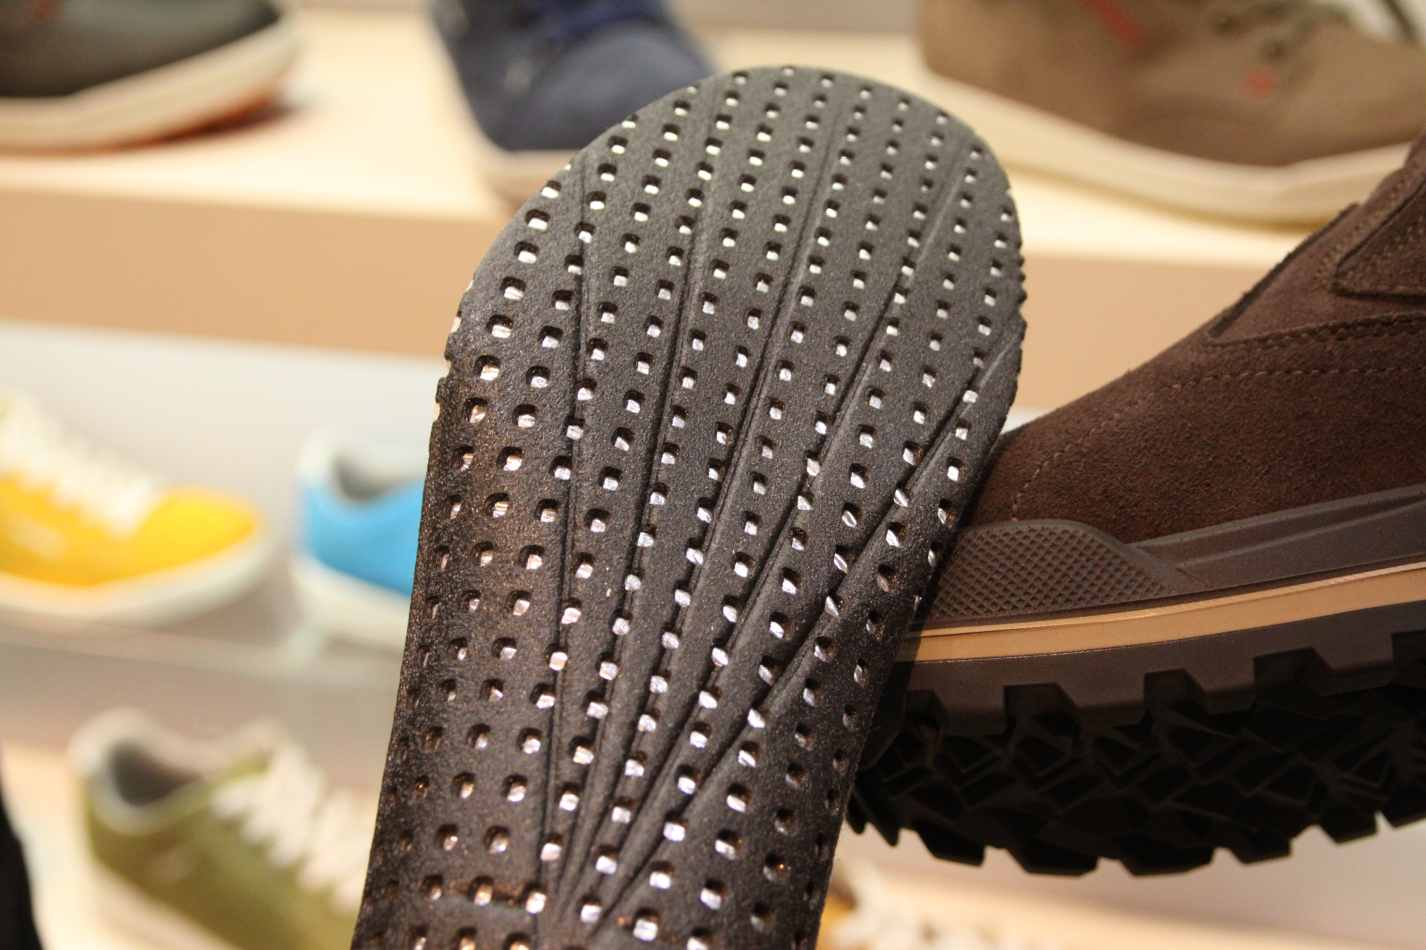 Lowa do zimní kolekce bot bude používat vložky s termofólií, která odráží vyzařované teplo zpět k chodidlu